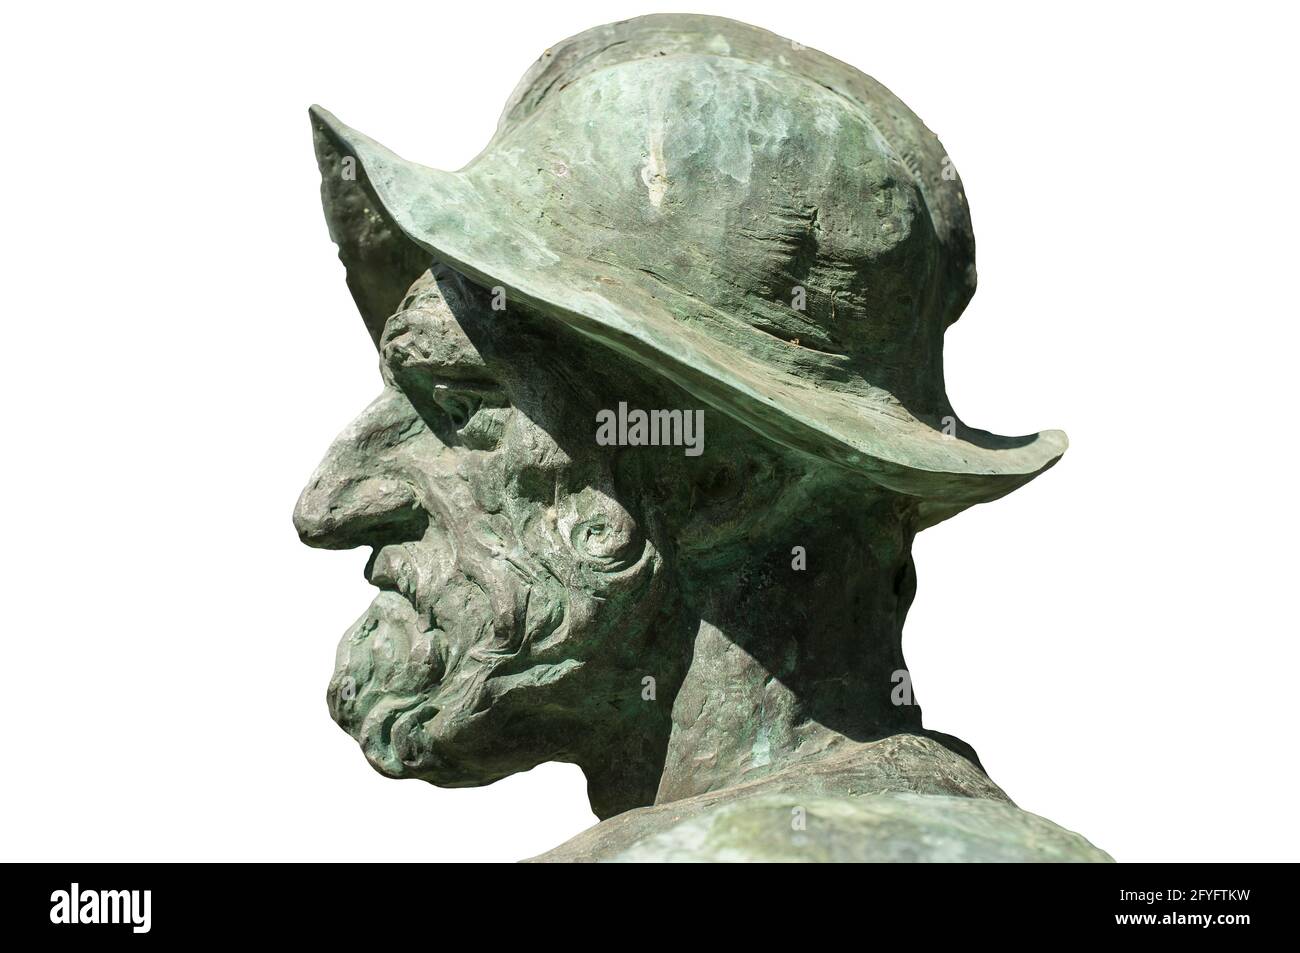 Statue de Francisco Pizarro. Gros plan du profil. Conquérant espagnol de l'Empire Inca. Fabriqué par Estanislao Garcia en 2003 Banque D'Images